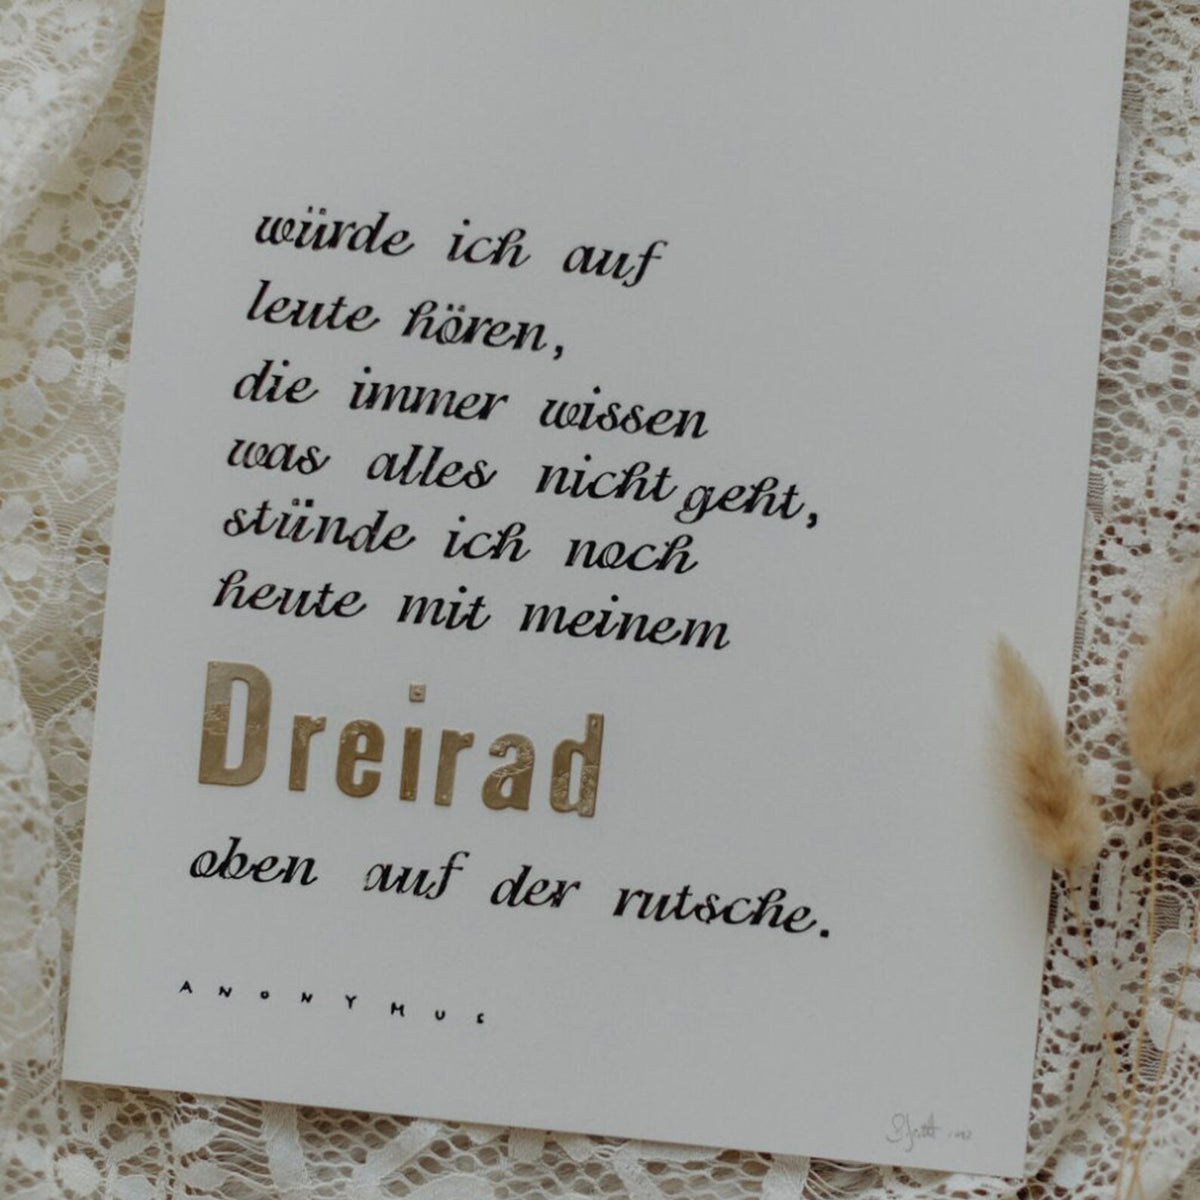 Gestempelter Kunstdruck "Dreirad" mit Goldprägung